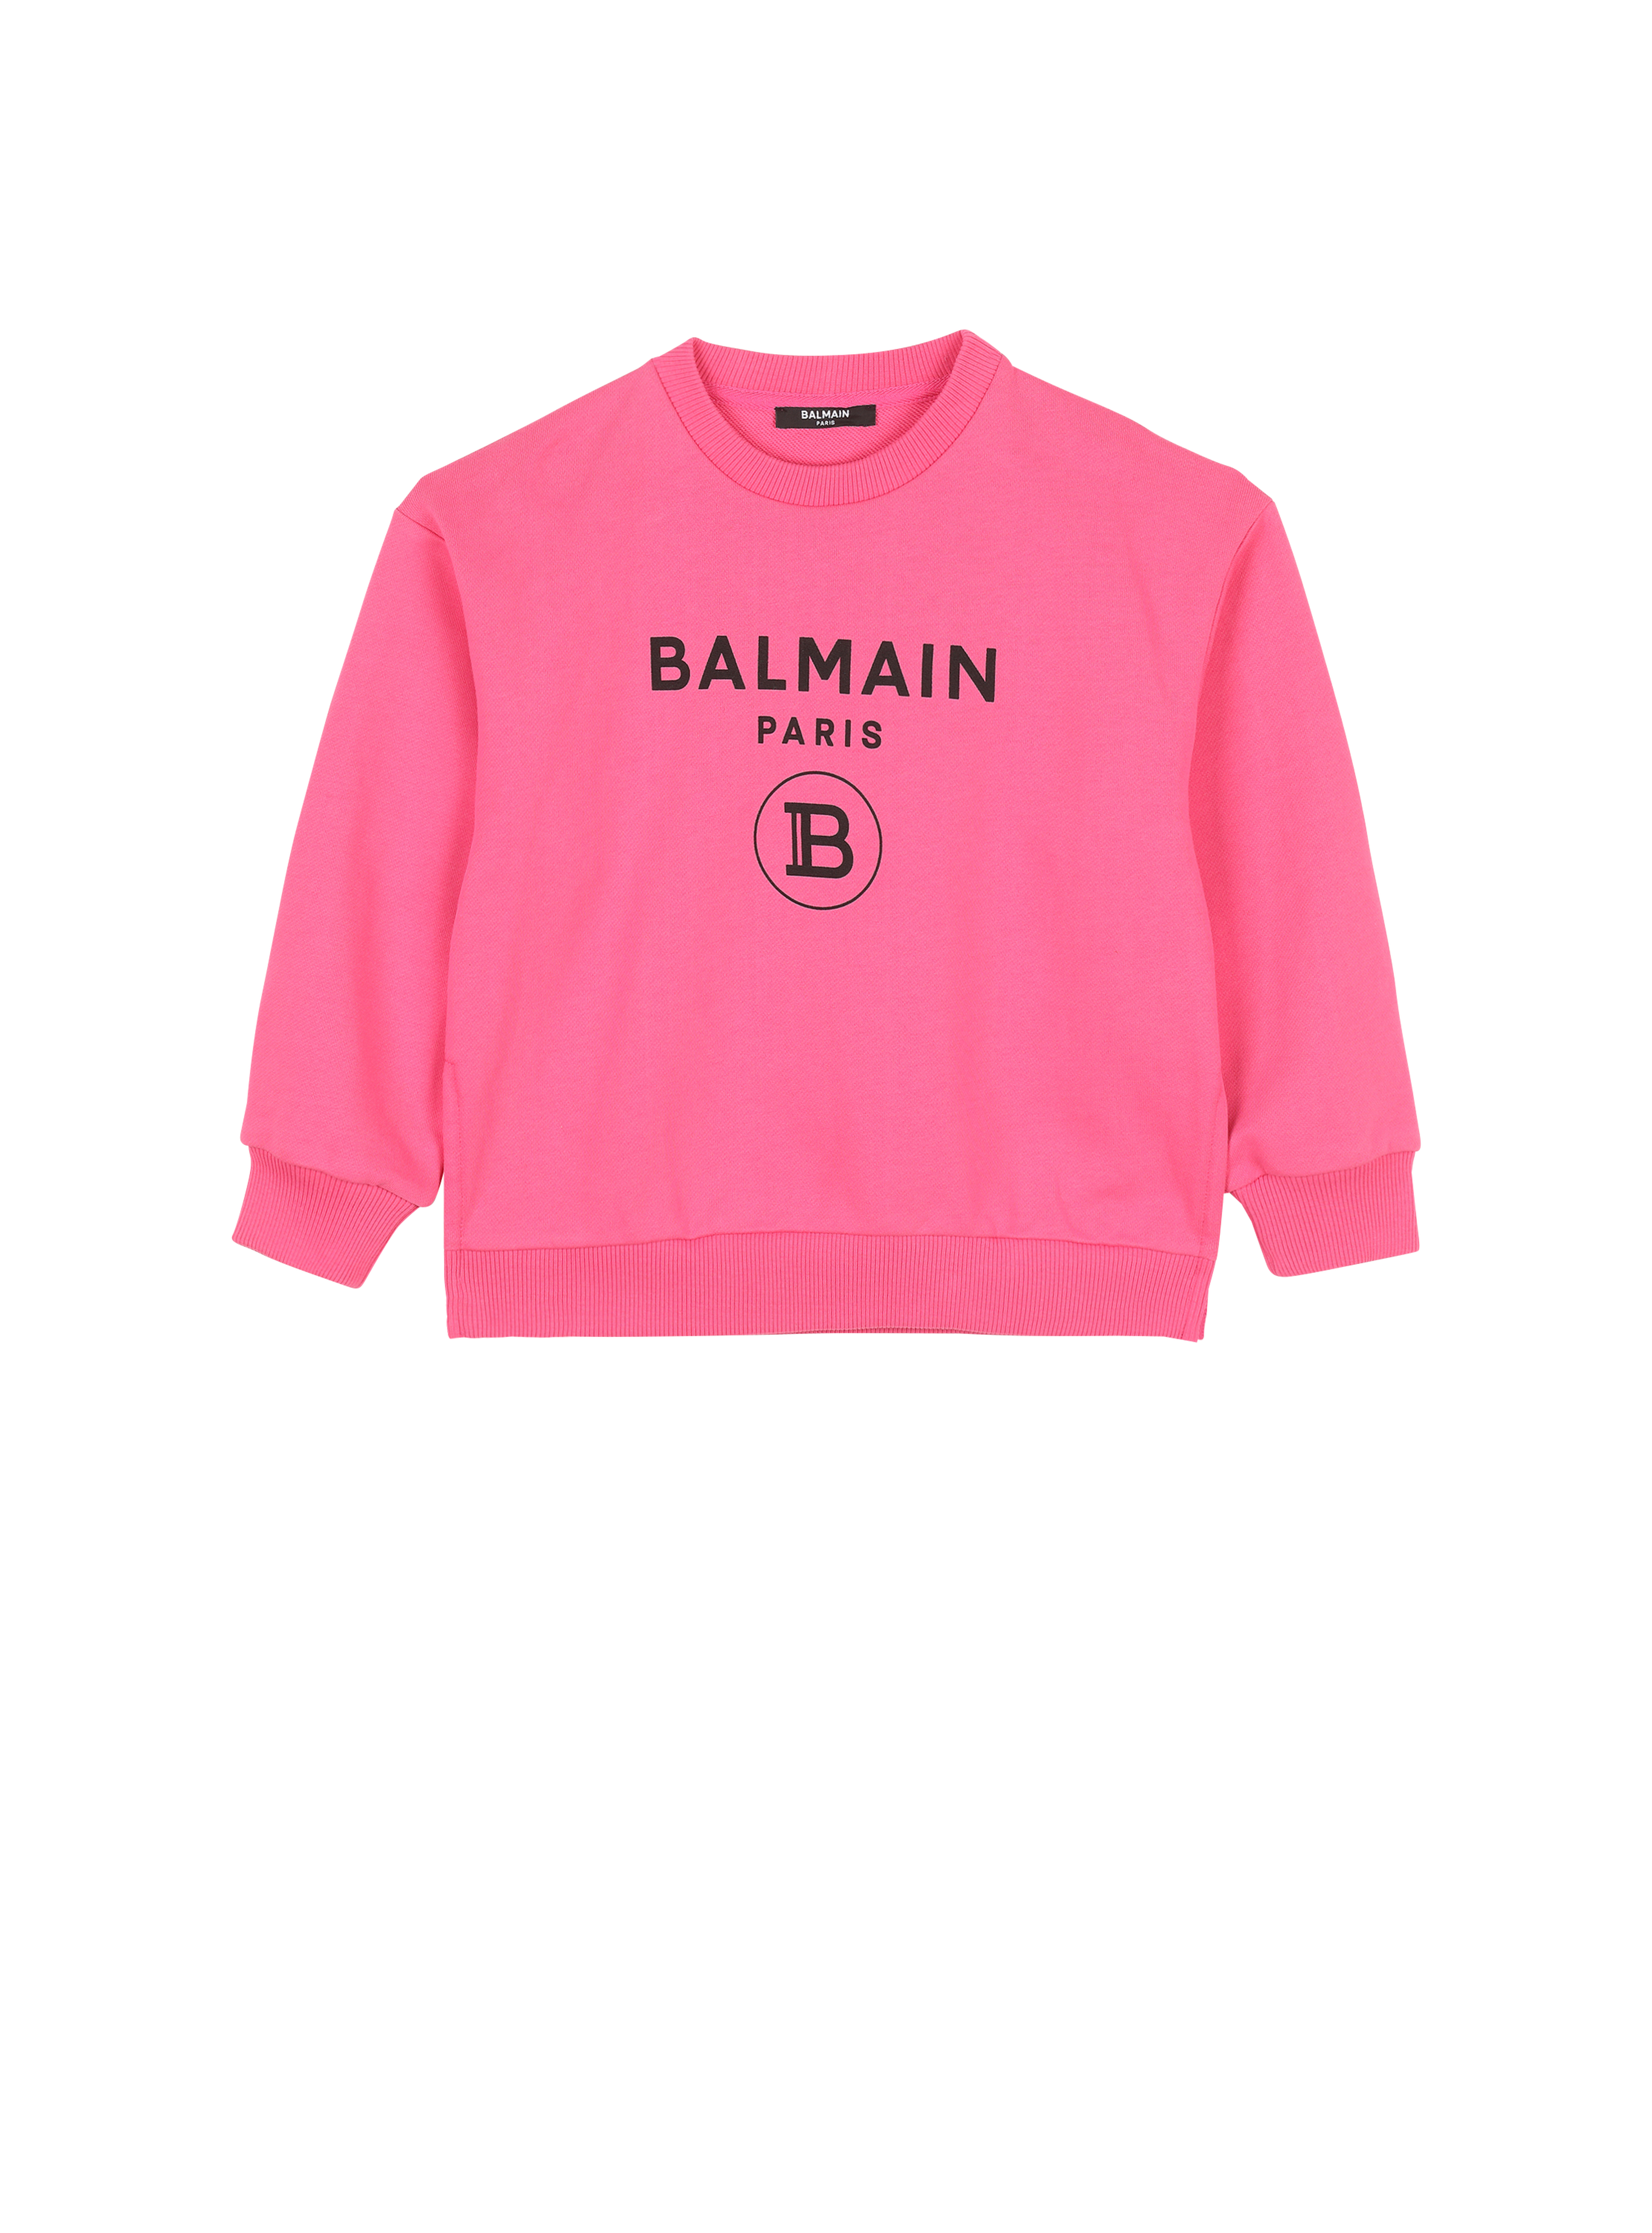 Pullover in cotone con logo Balmain, rosa